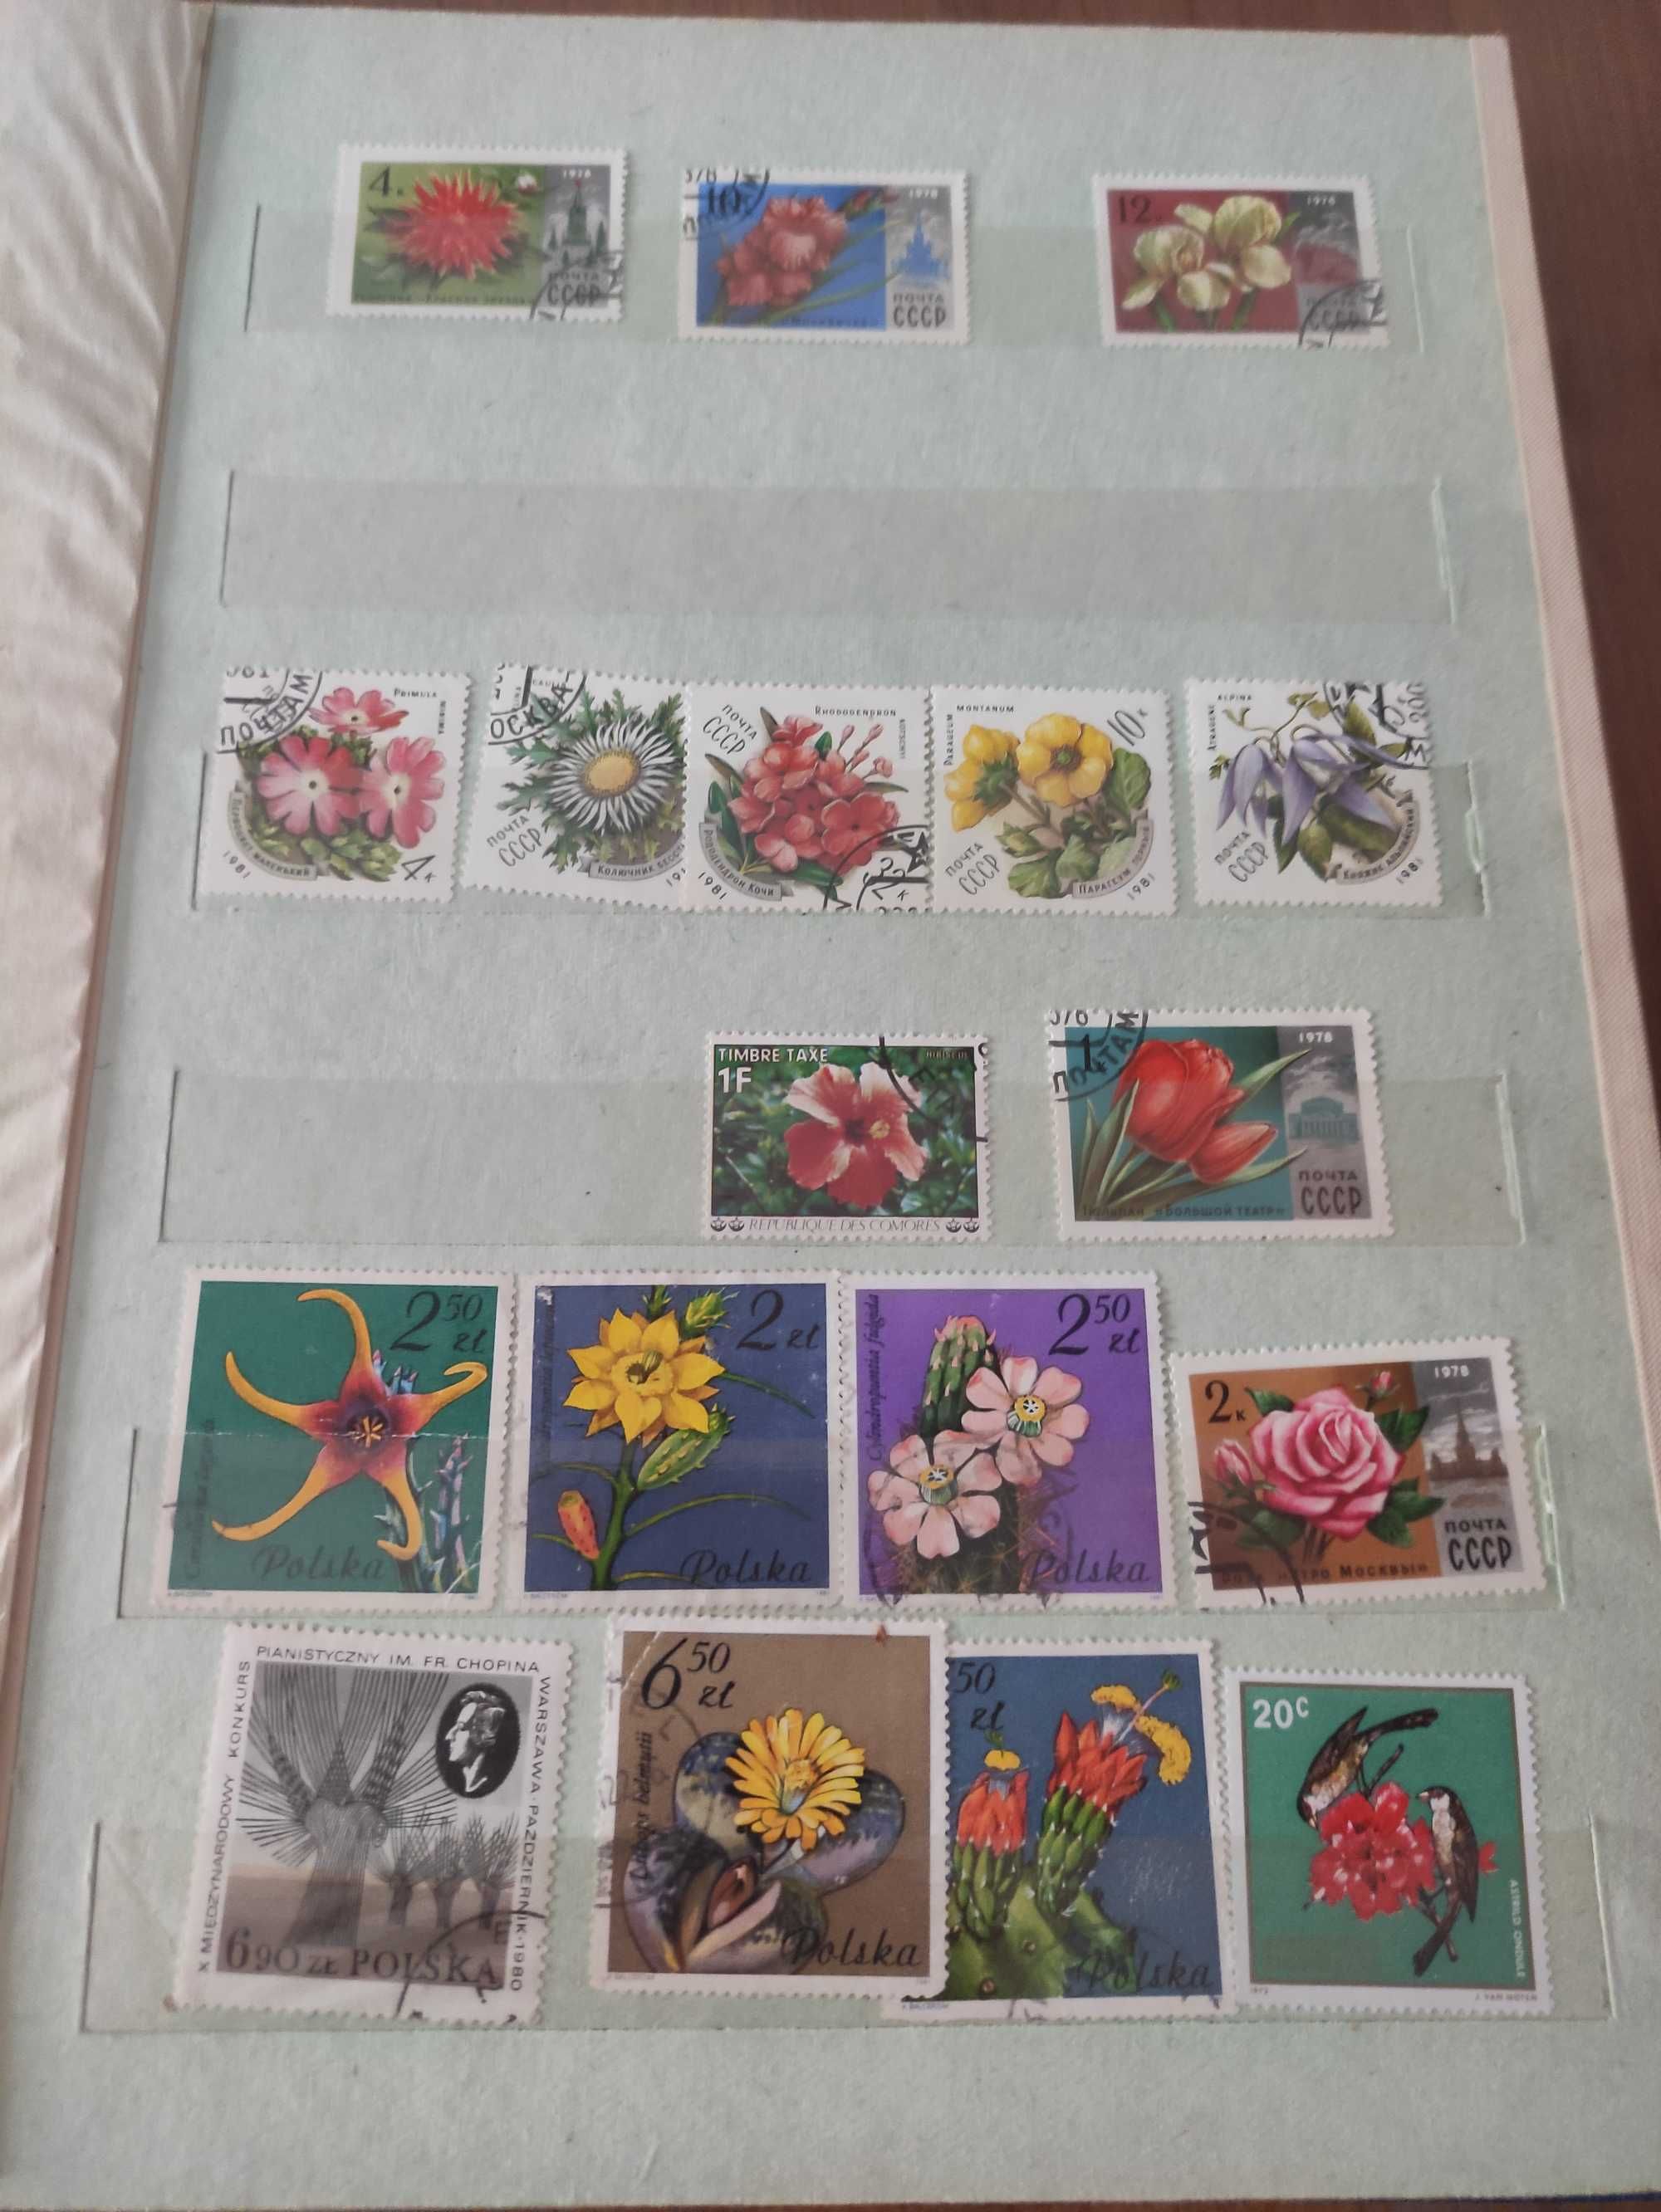 Kolekcja unikatowych znaczków pocztowych